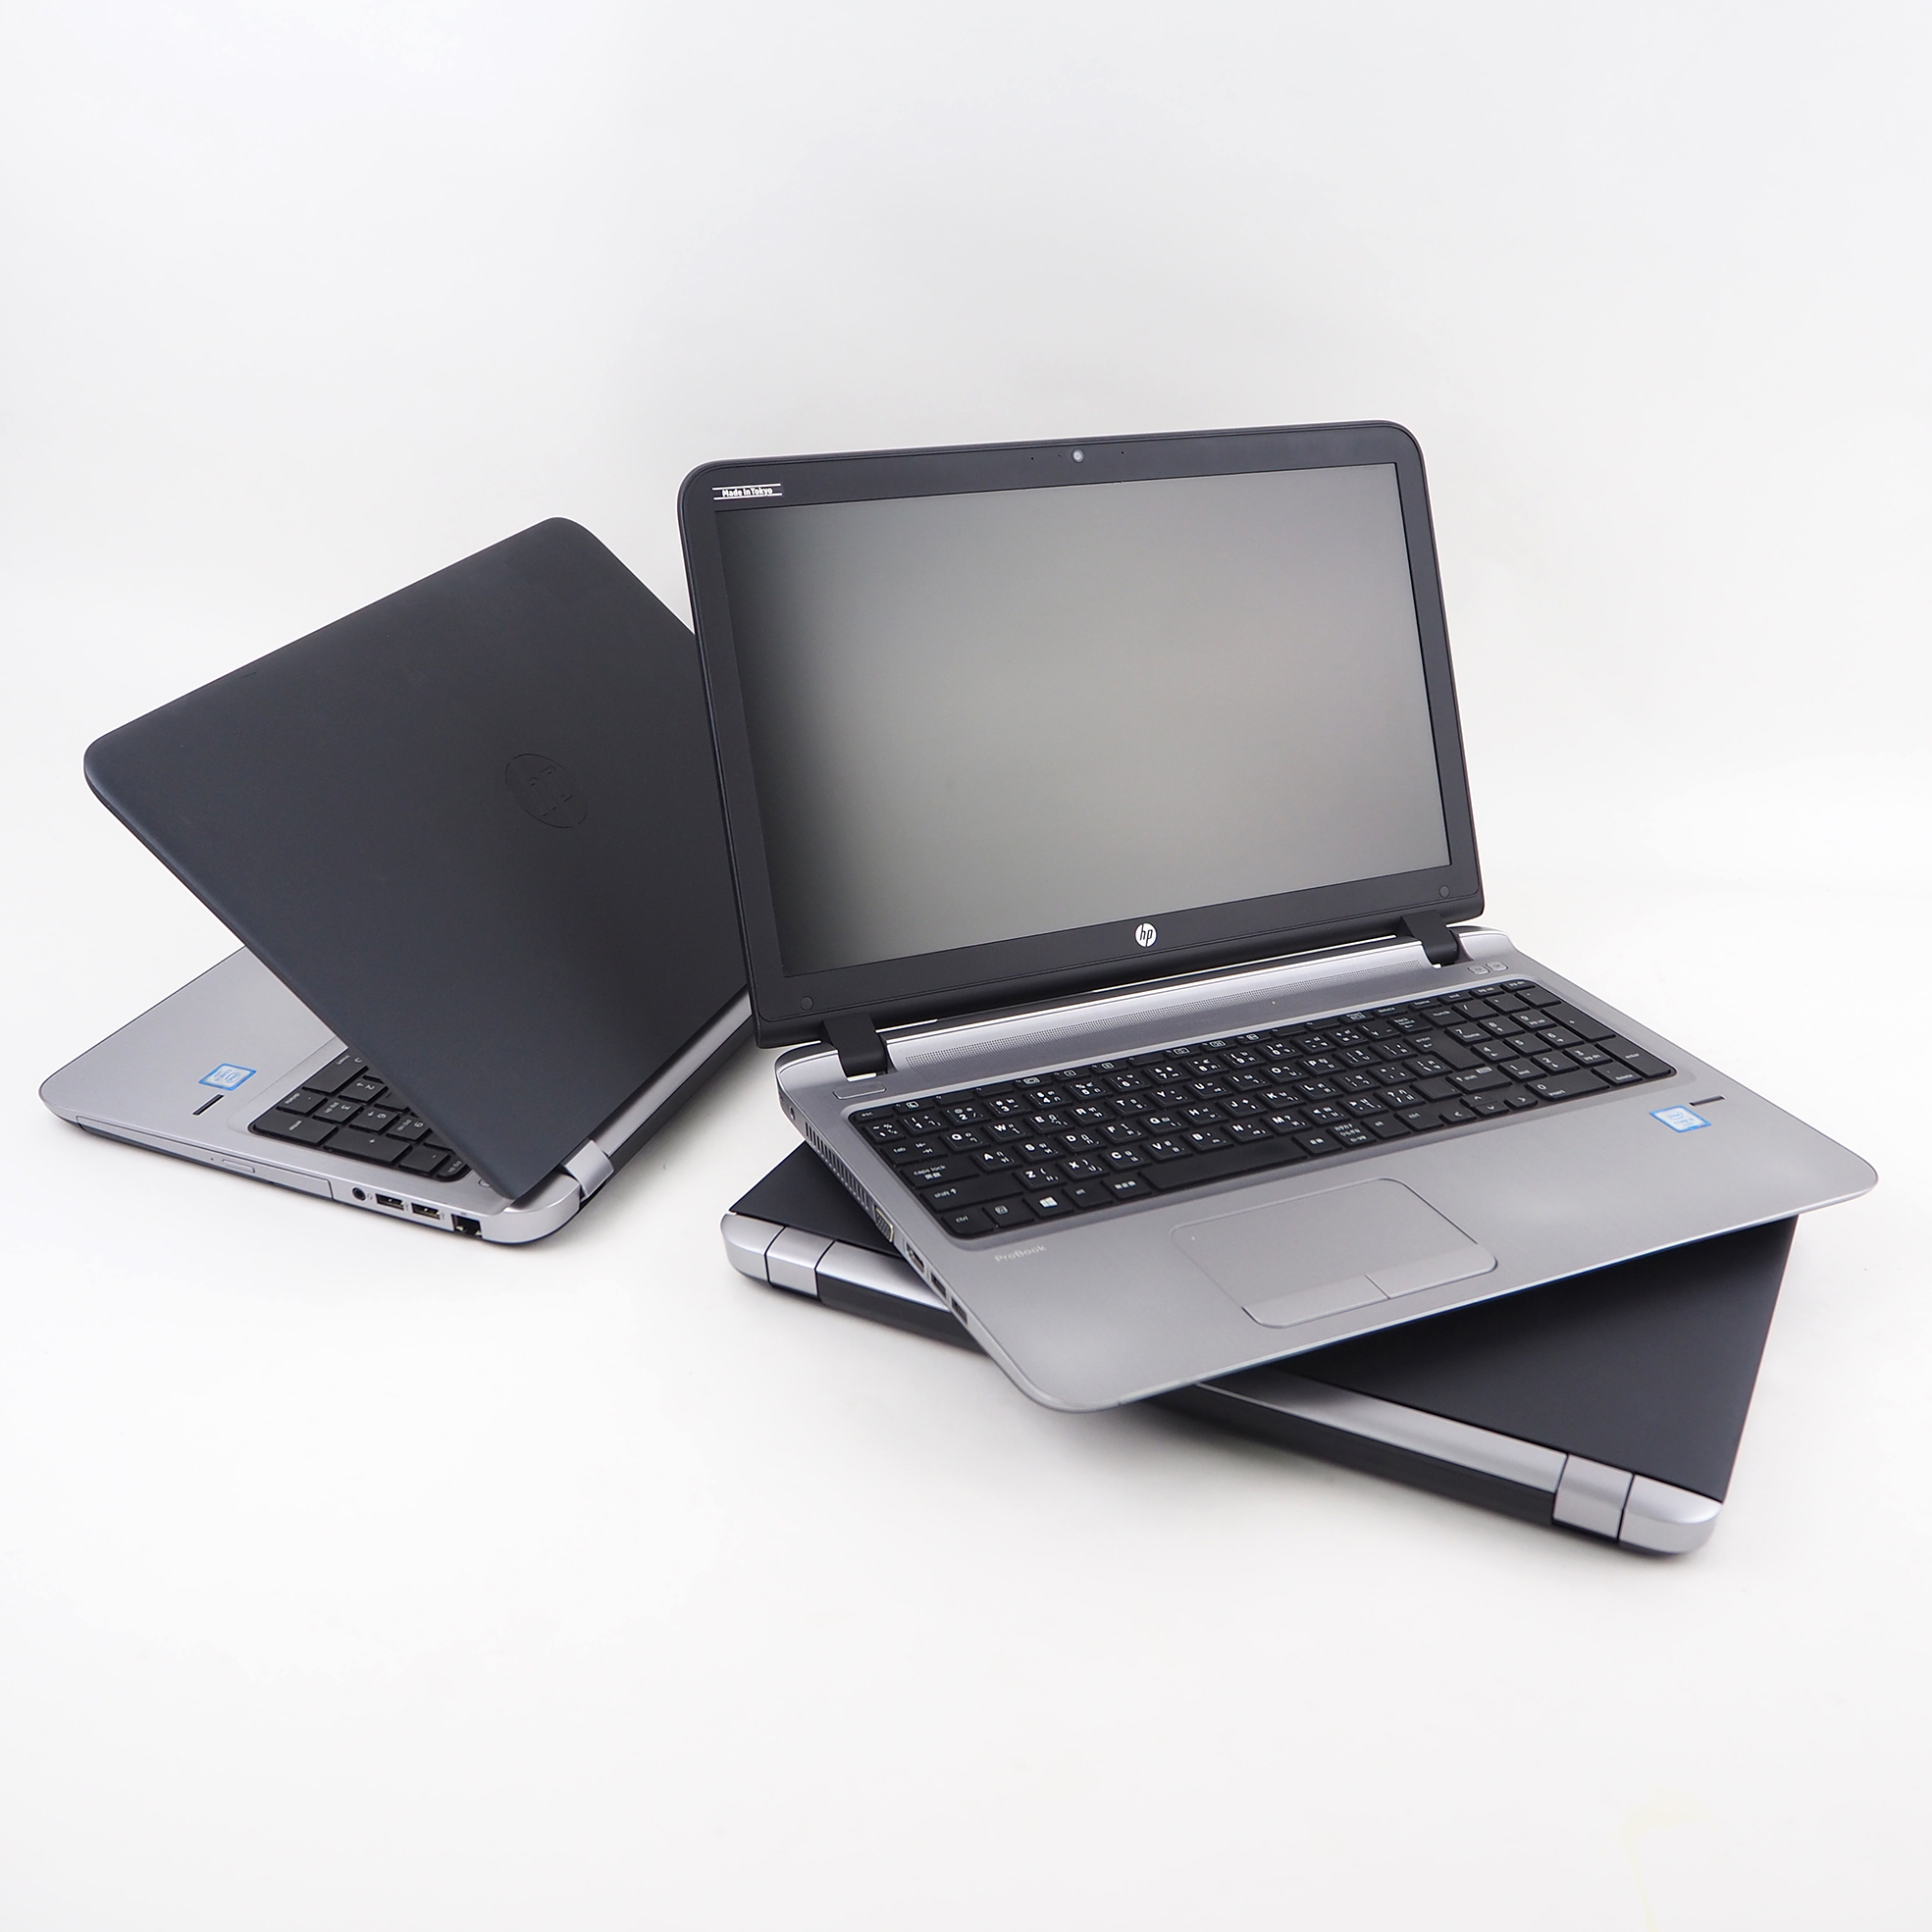 มุมมองเพิ่มเติมของสินค้า โน๊ตบุ๊ค HP Probook 450 G3 - Core i3 GEN 6 Ram 4 GB HDD 320GB มีกล้องในตัว Refhed laptop used notebook คอมพิวเตอร์ สภาพดี มีประกัน พร้อมบริการหลังการขาย By Totalsol